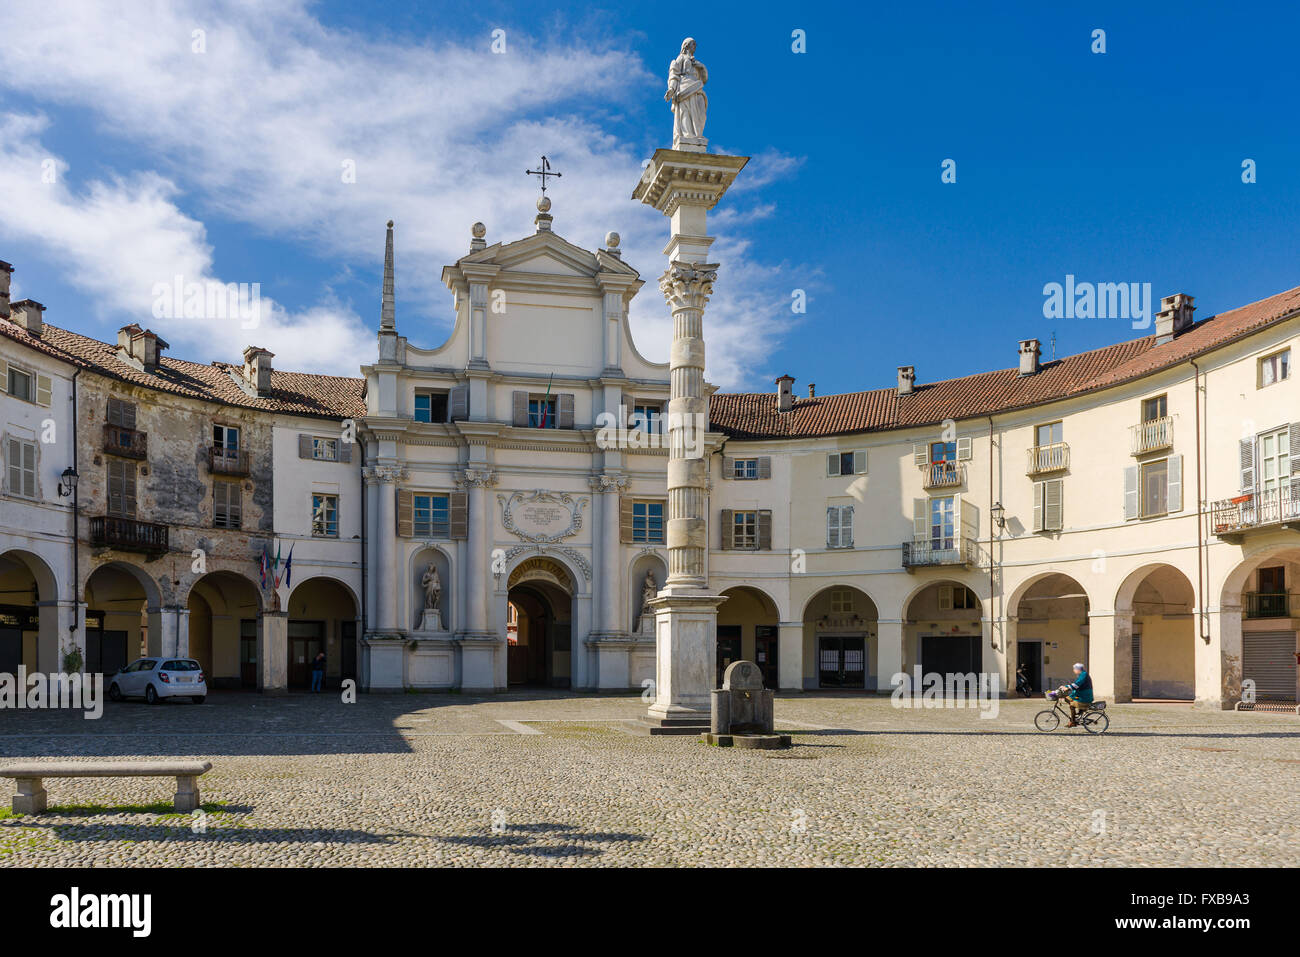 Antica chiesa nella piazza principale della città vecchia di Venaria Reale, Piemonte Foto Stock